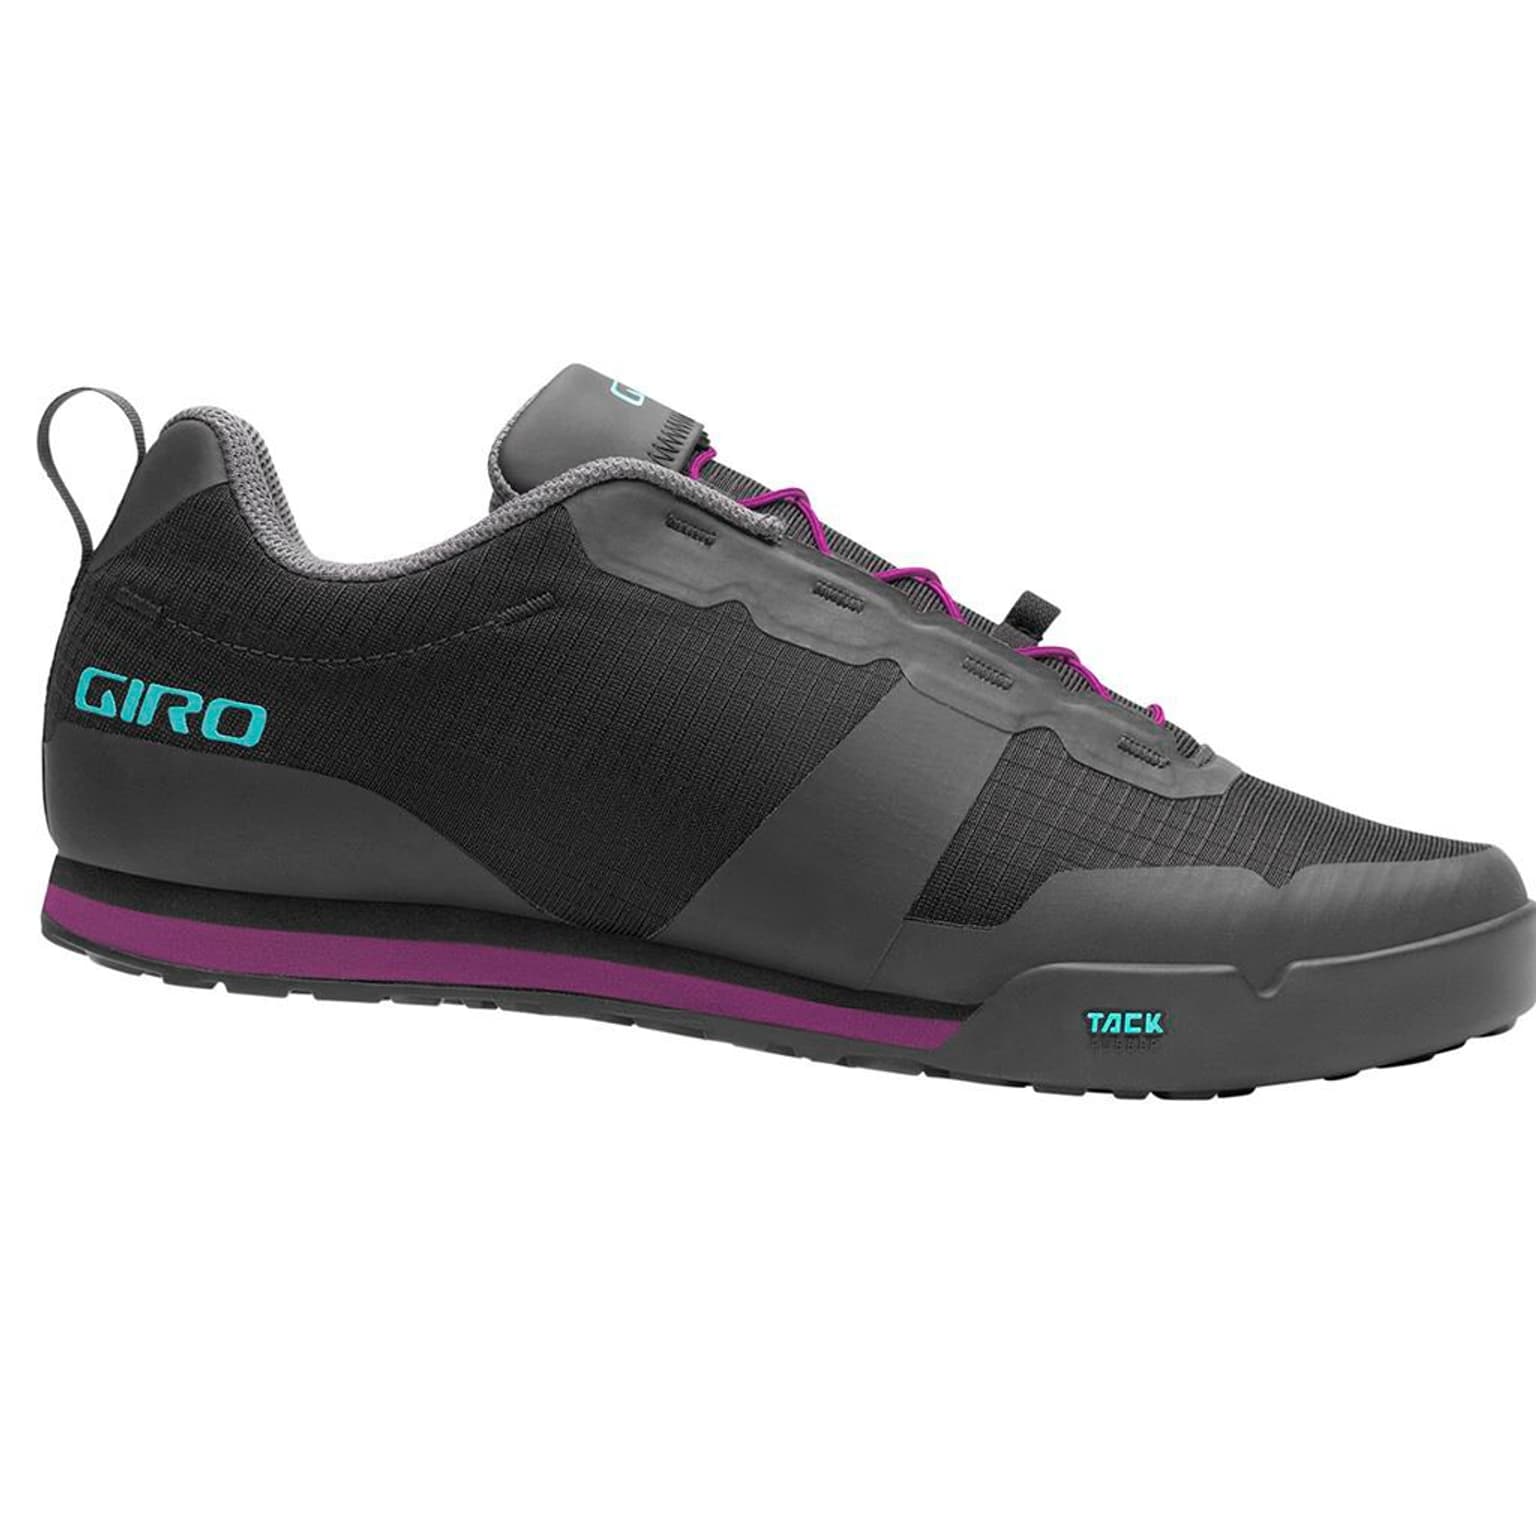 Giro Giro Tracker W FL Shoe Scarpe da ciclismo nero 1